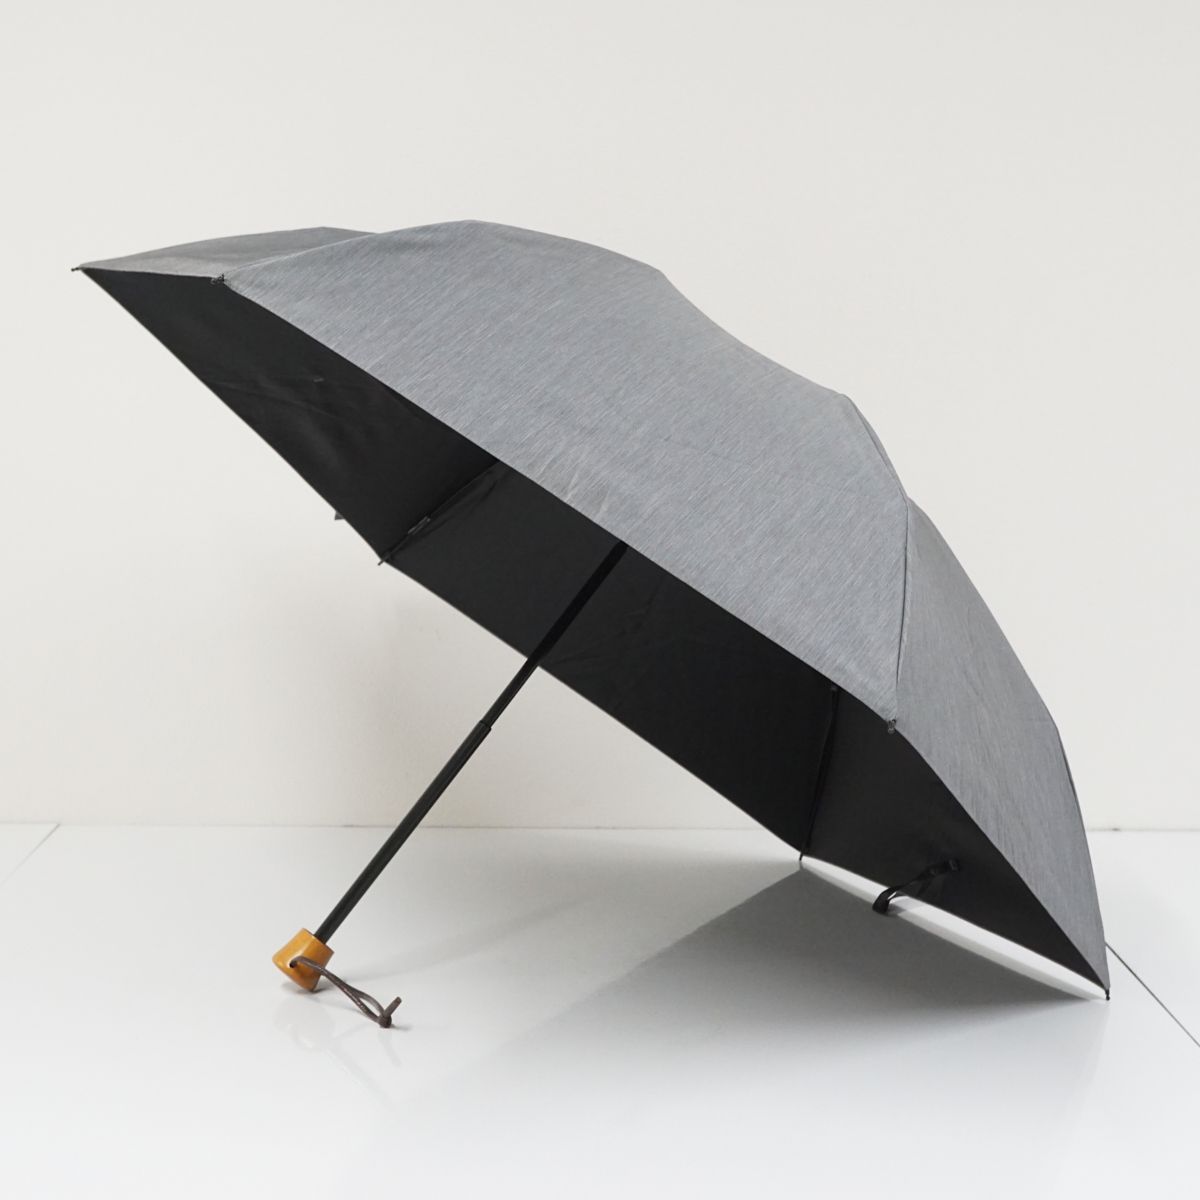 サンバリア100 完全遮光折日傘 USED美品 3段折 フロストグレー UV 遮熱